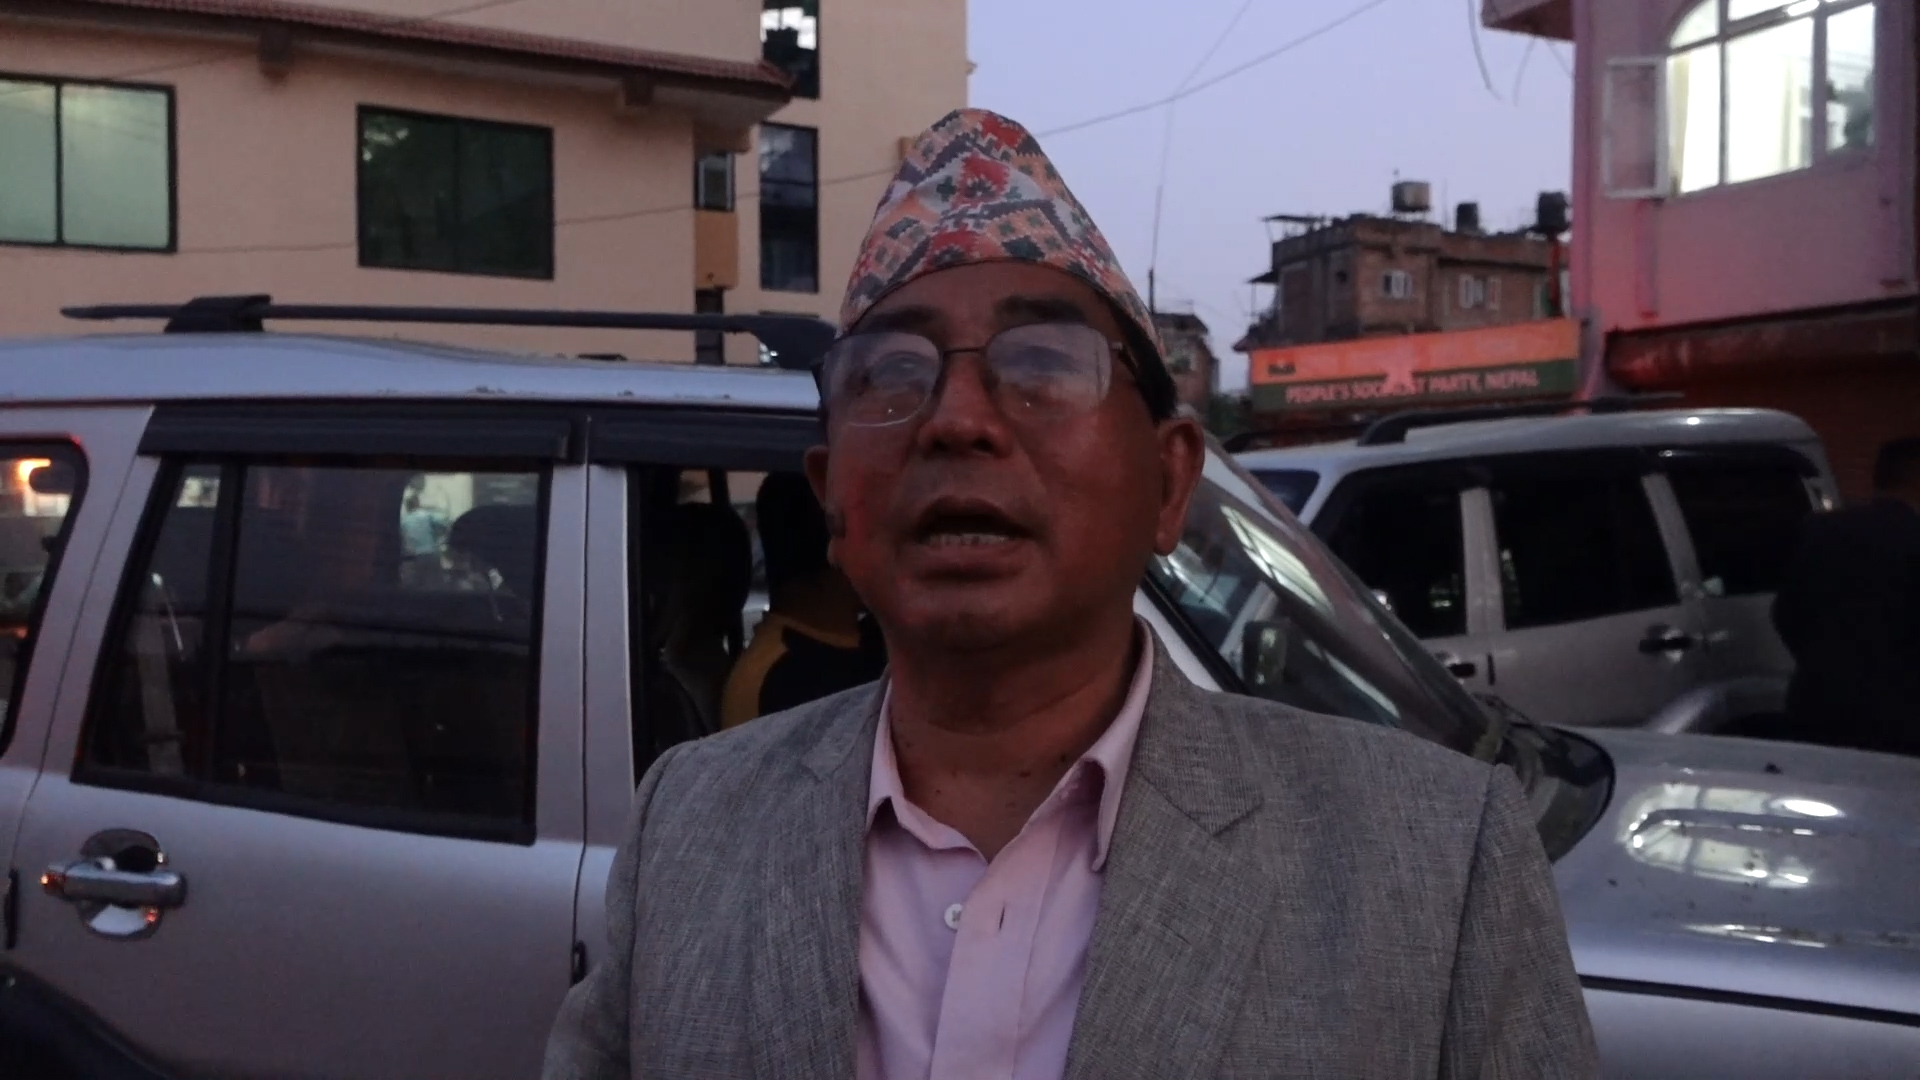 Janata Samajwadi Party Nepal splits